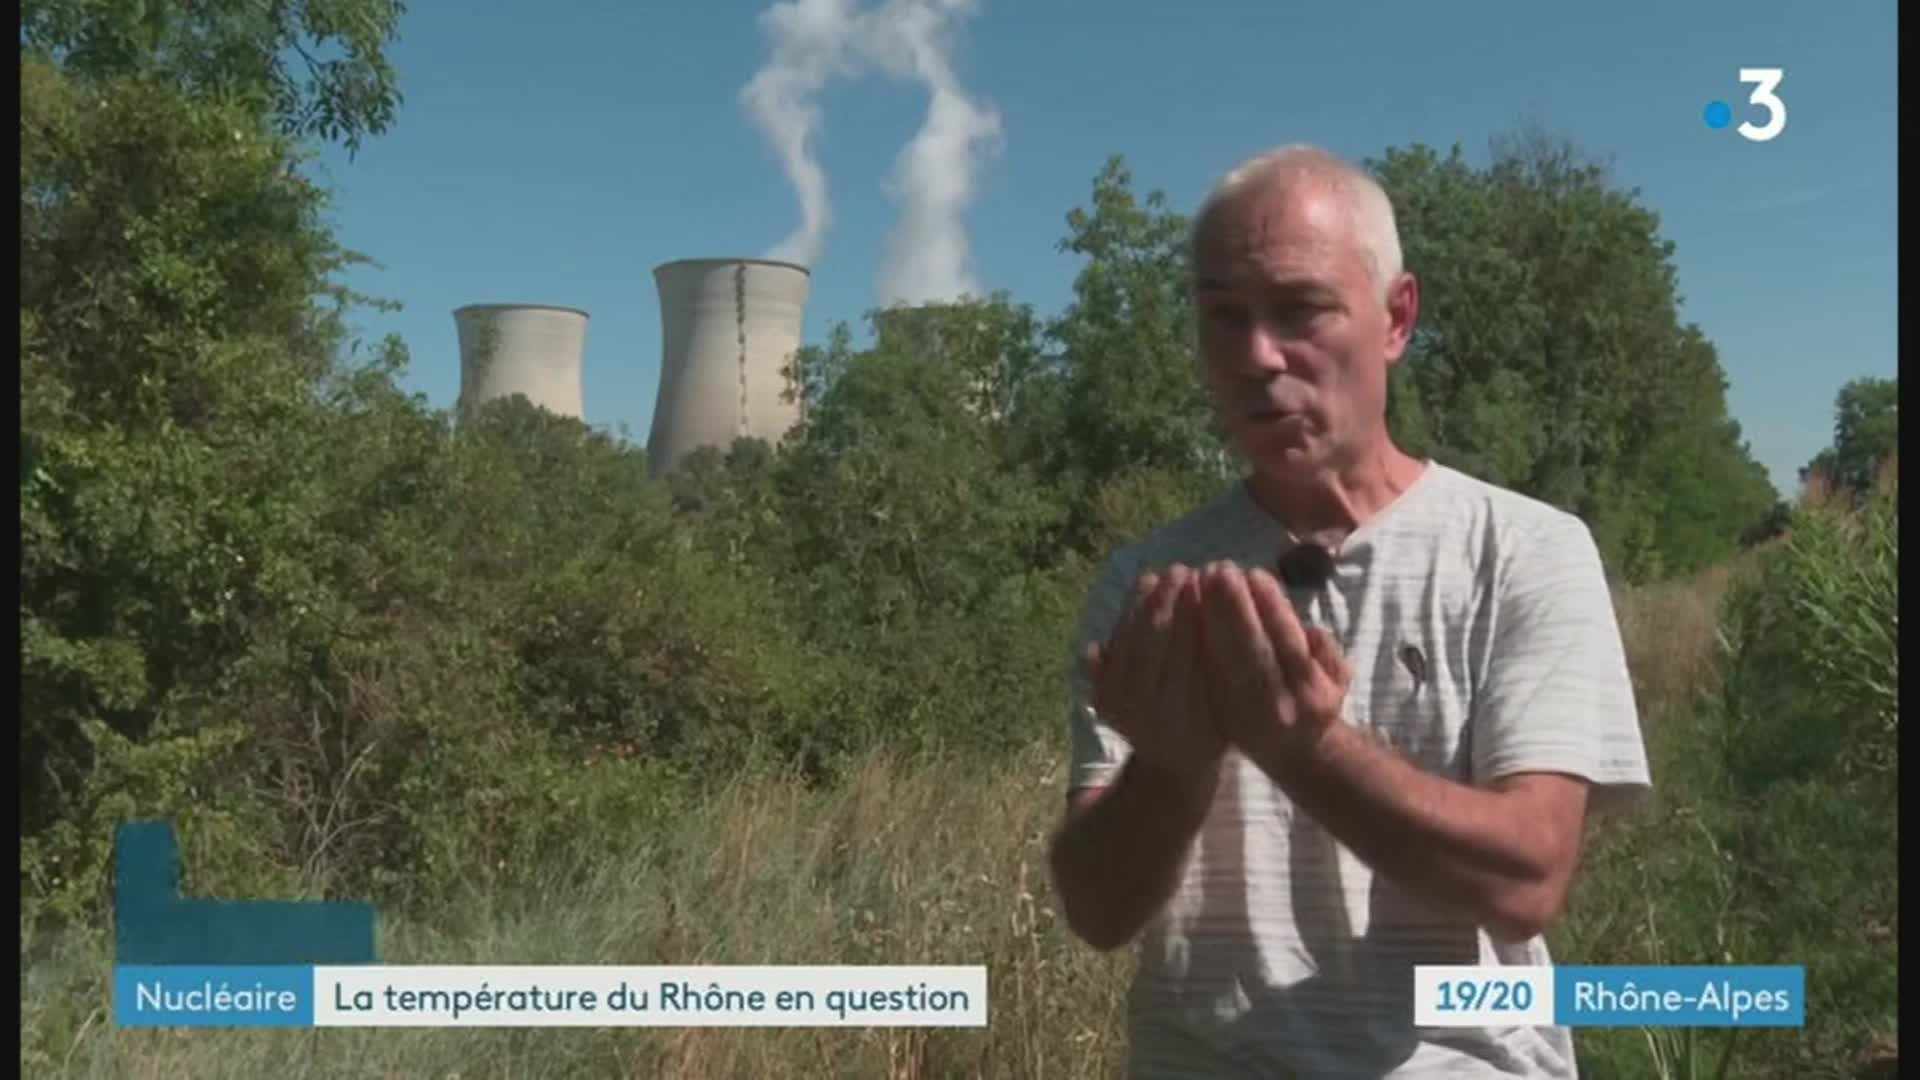 19/20 - F3 Rhöne-Alpes - 28-07-2022 , Centrale nucléaire